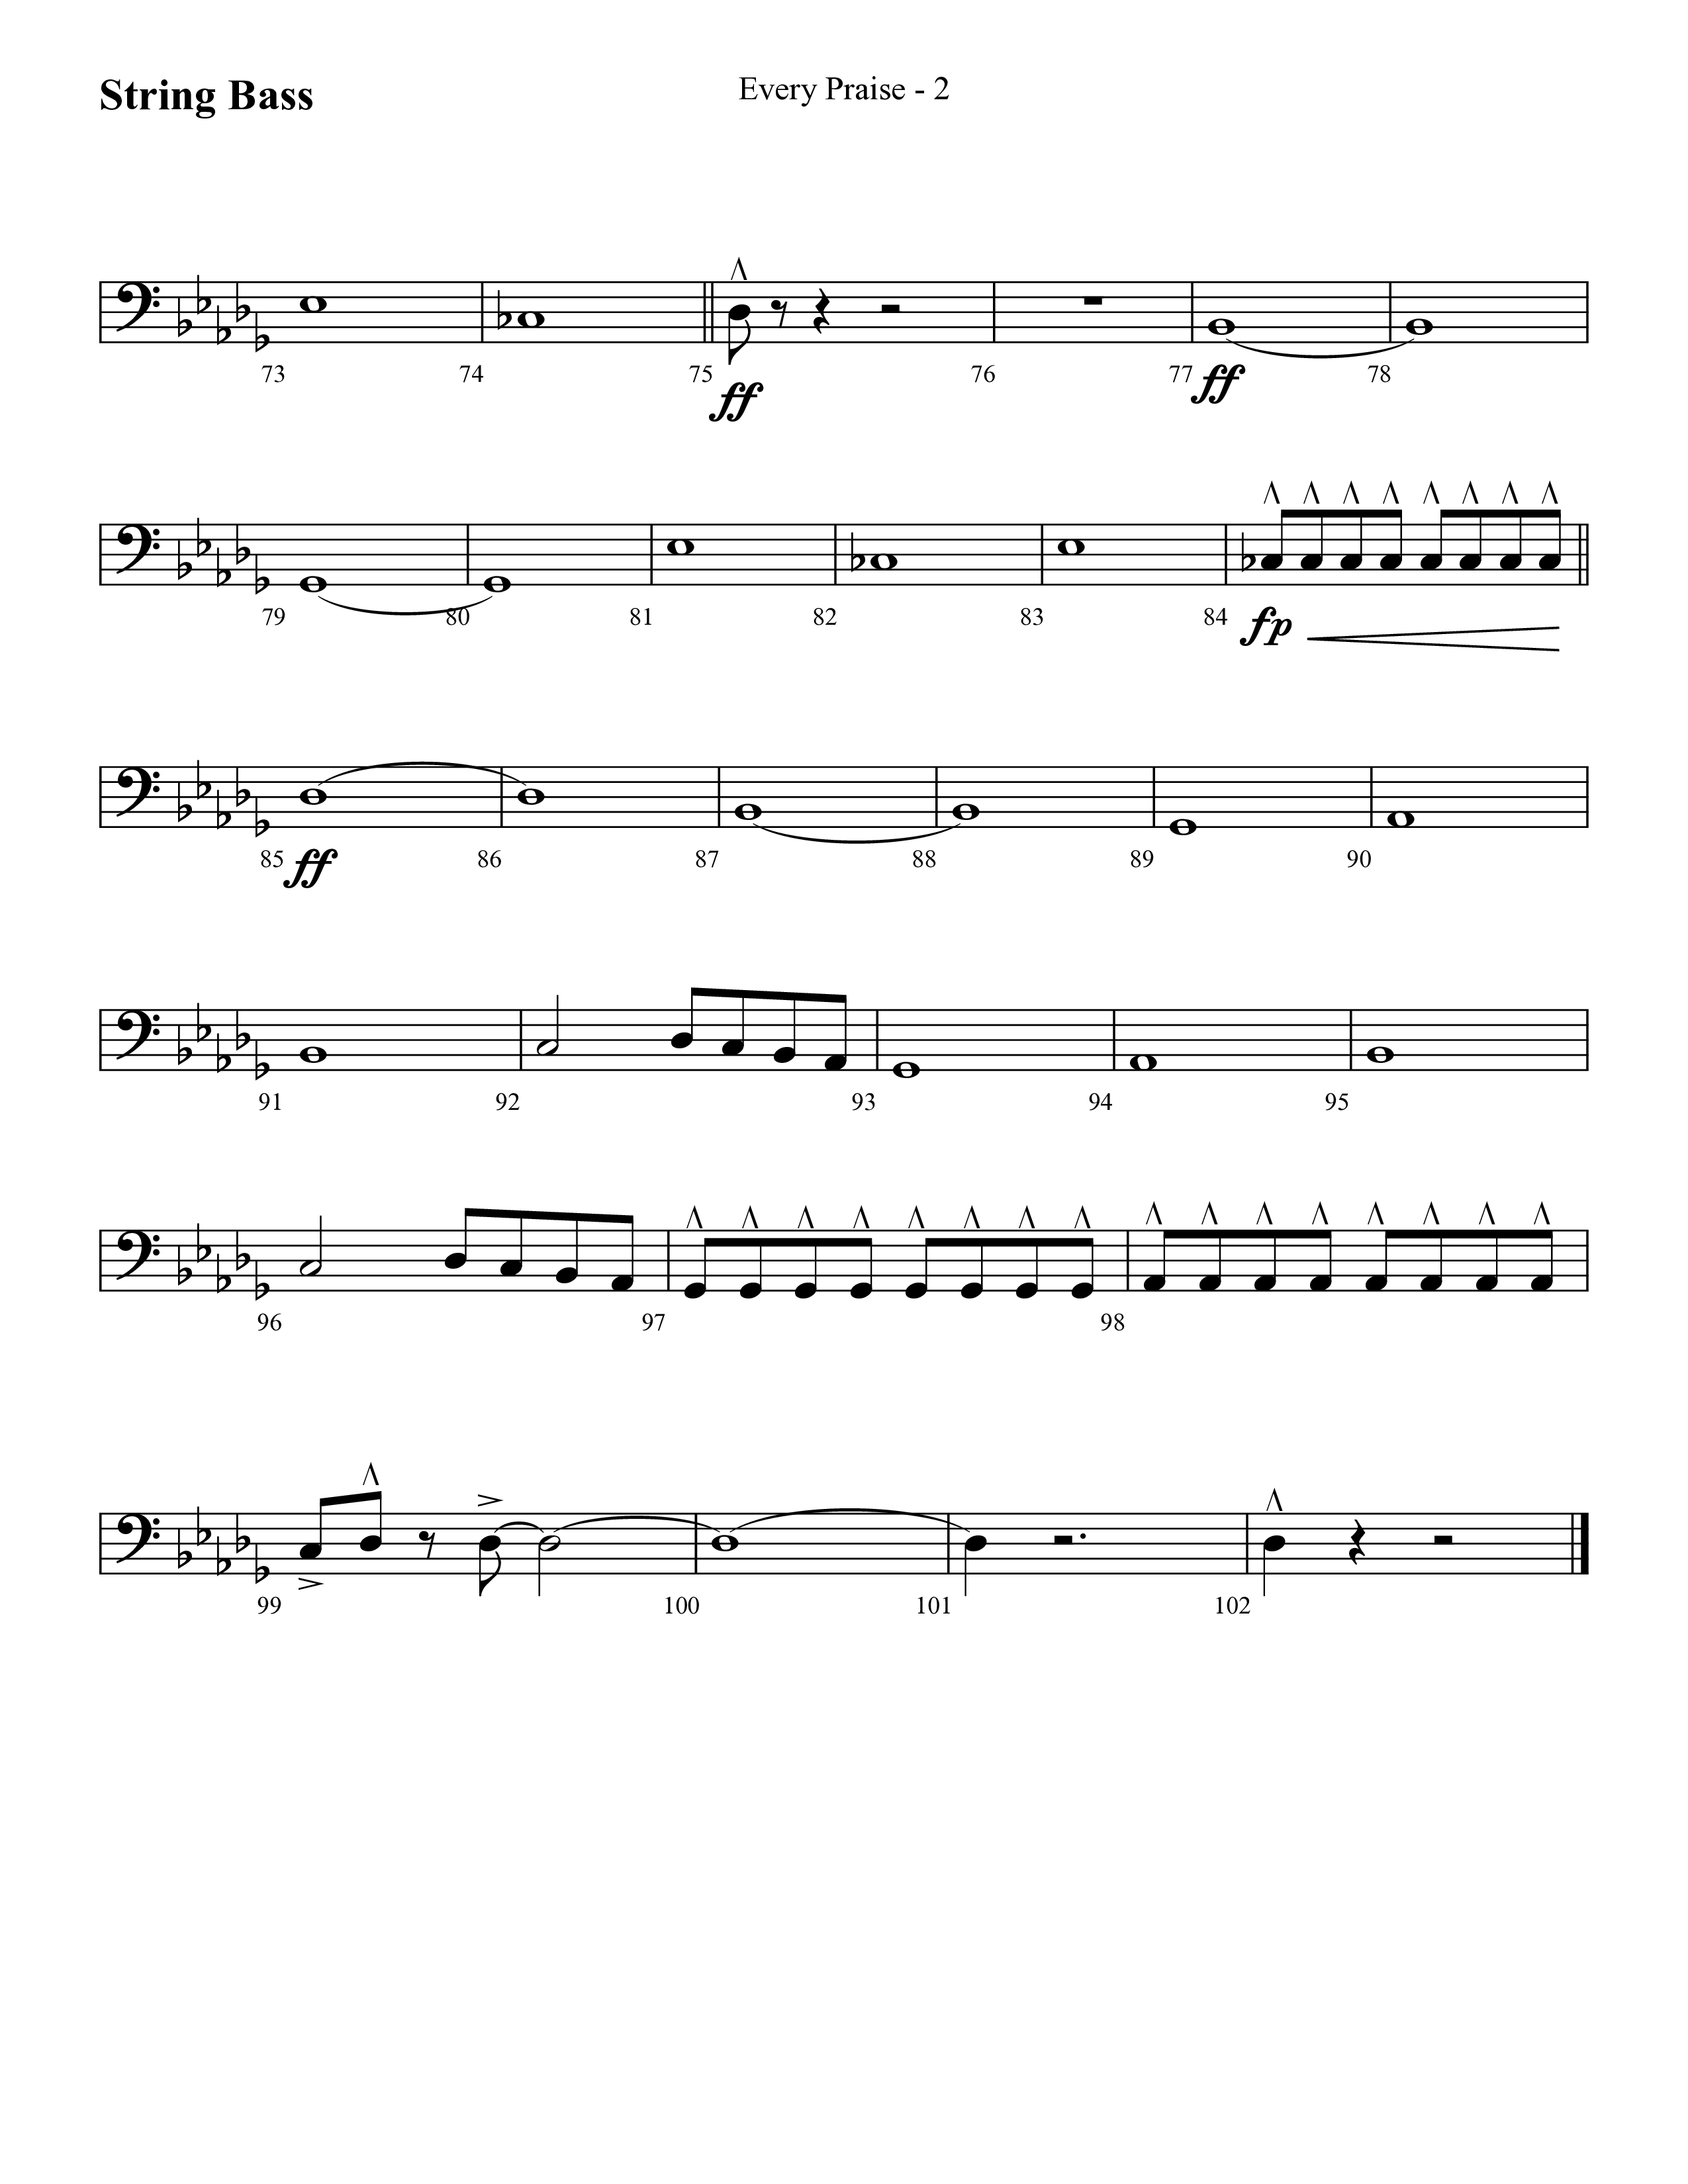 Every Praise (Choral Anthem SATB) String Bass (Lifeway Choral / Arr. Cliff Duren)